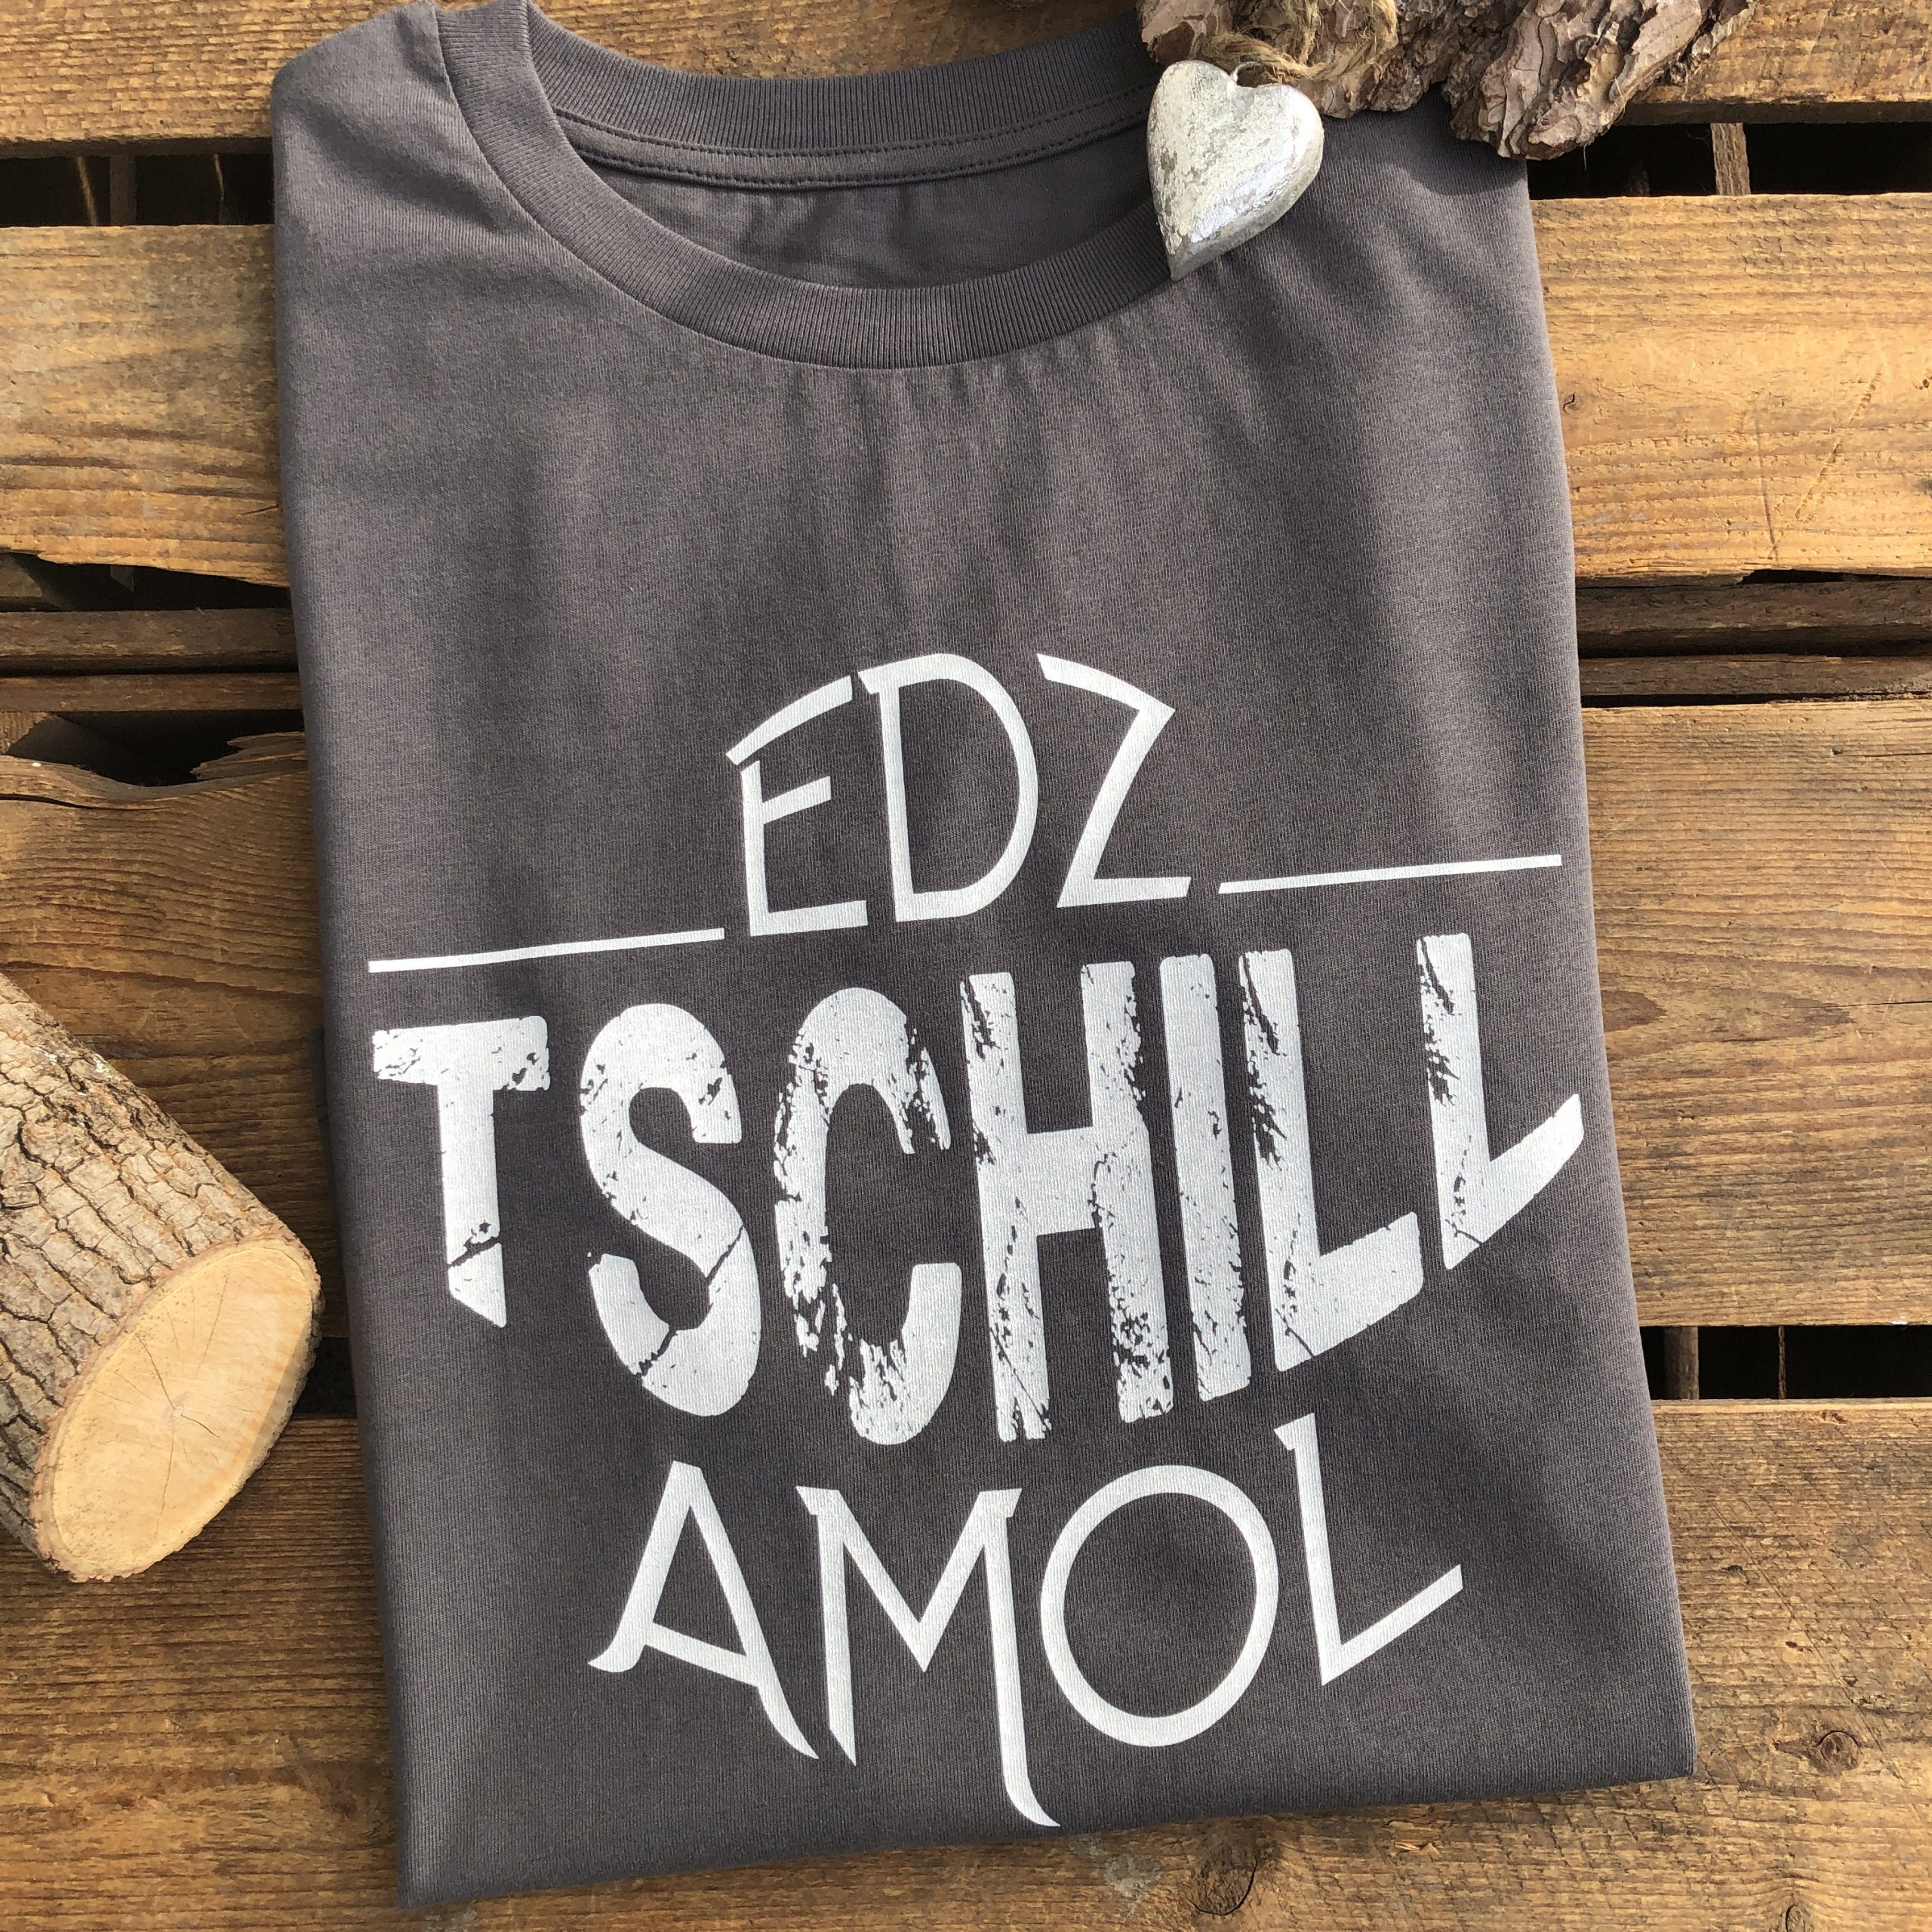 Edz Tschill Amol T-Shirt Fränkisch